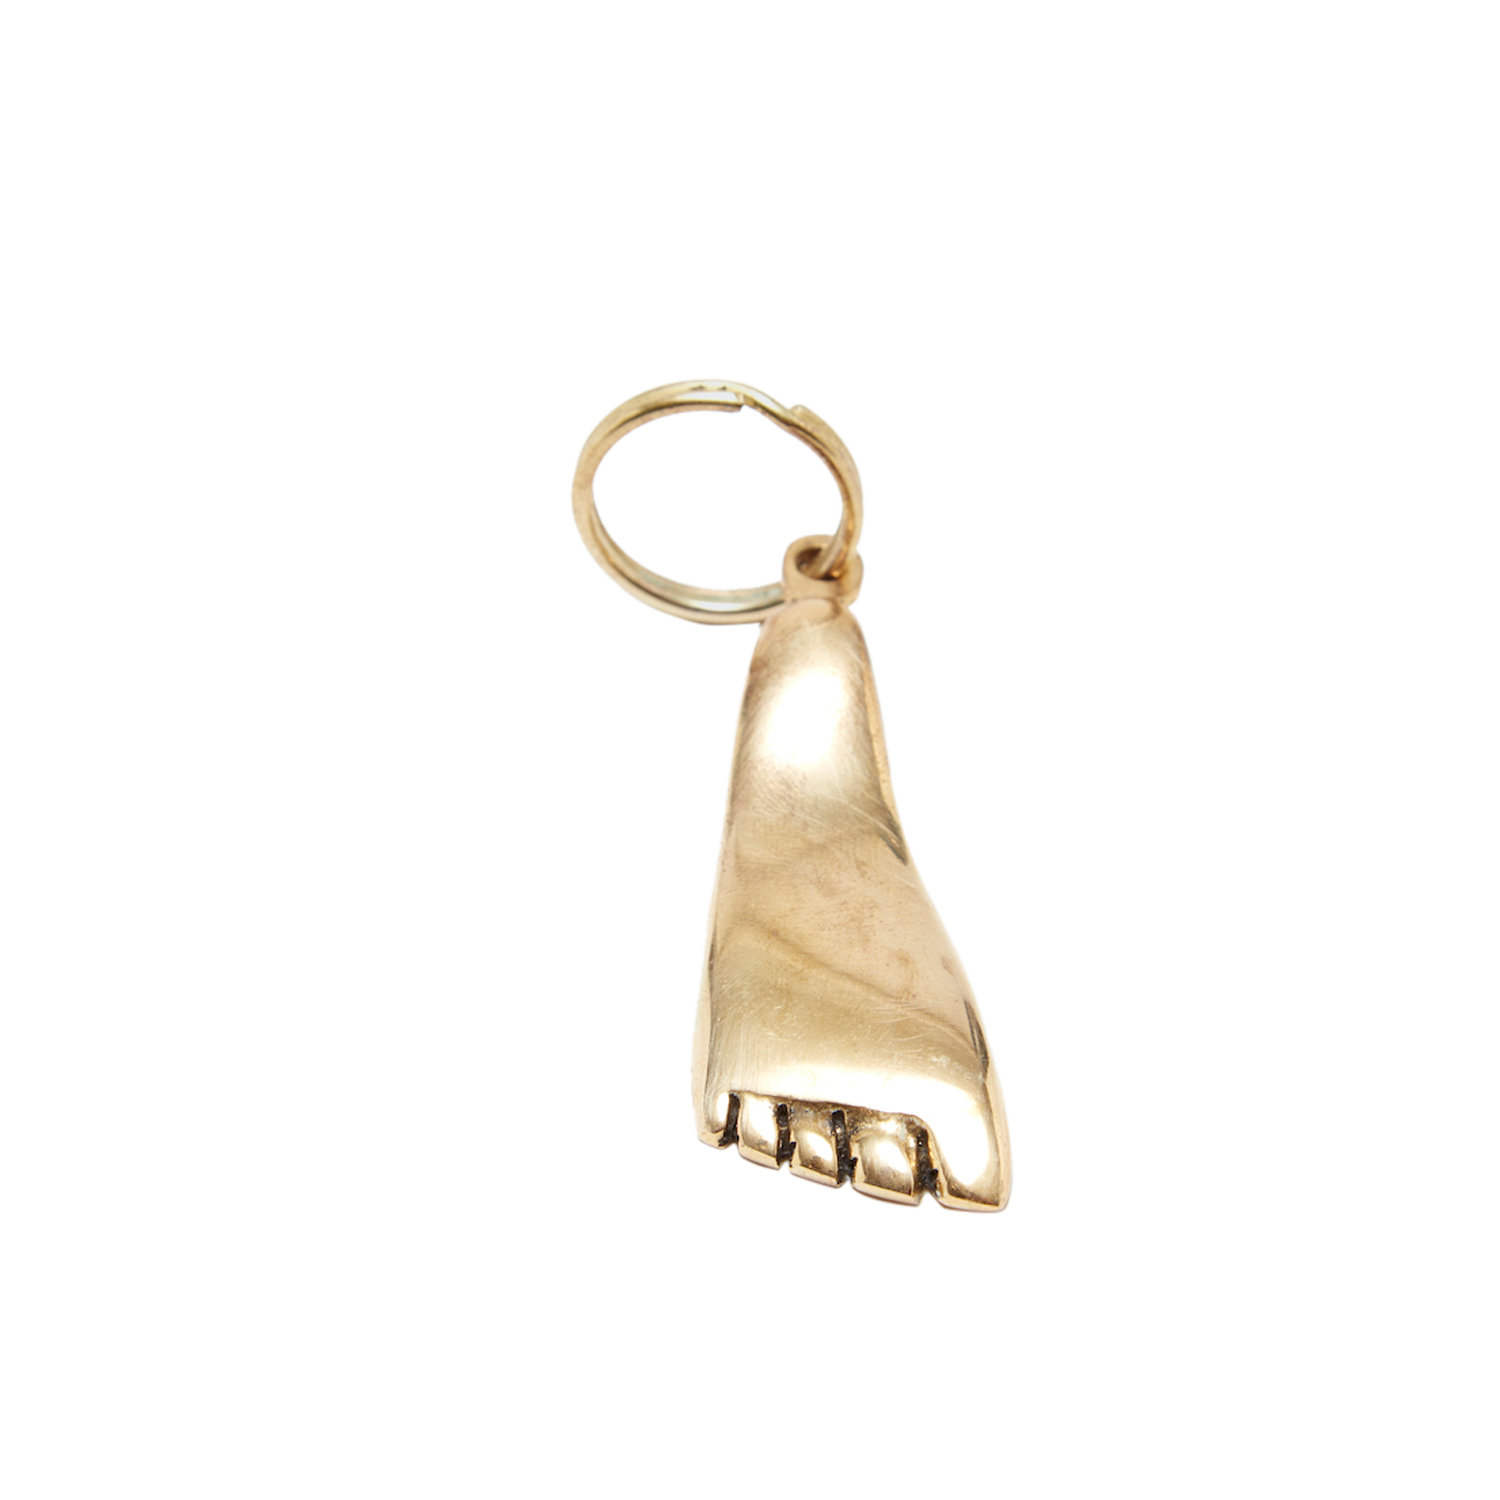 #5735 Brass Foot Key Ring